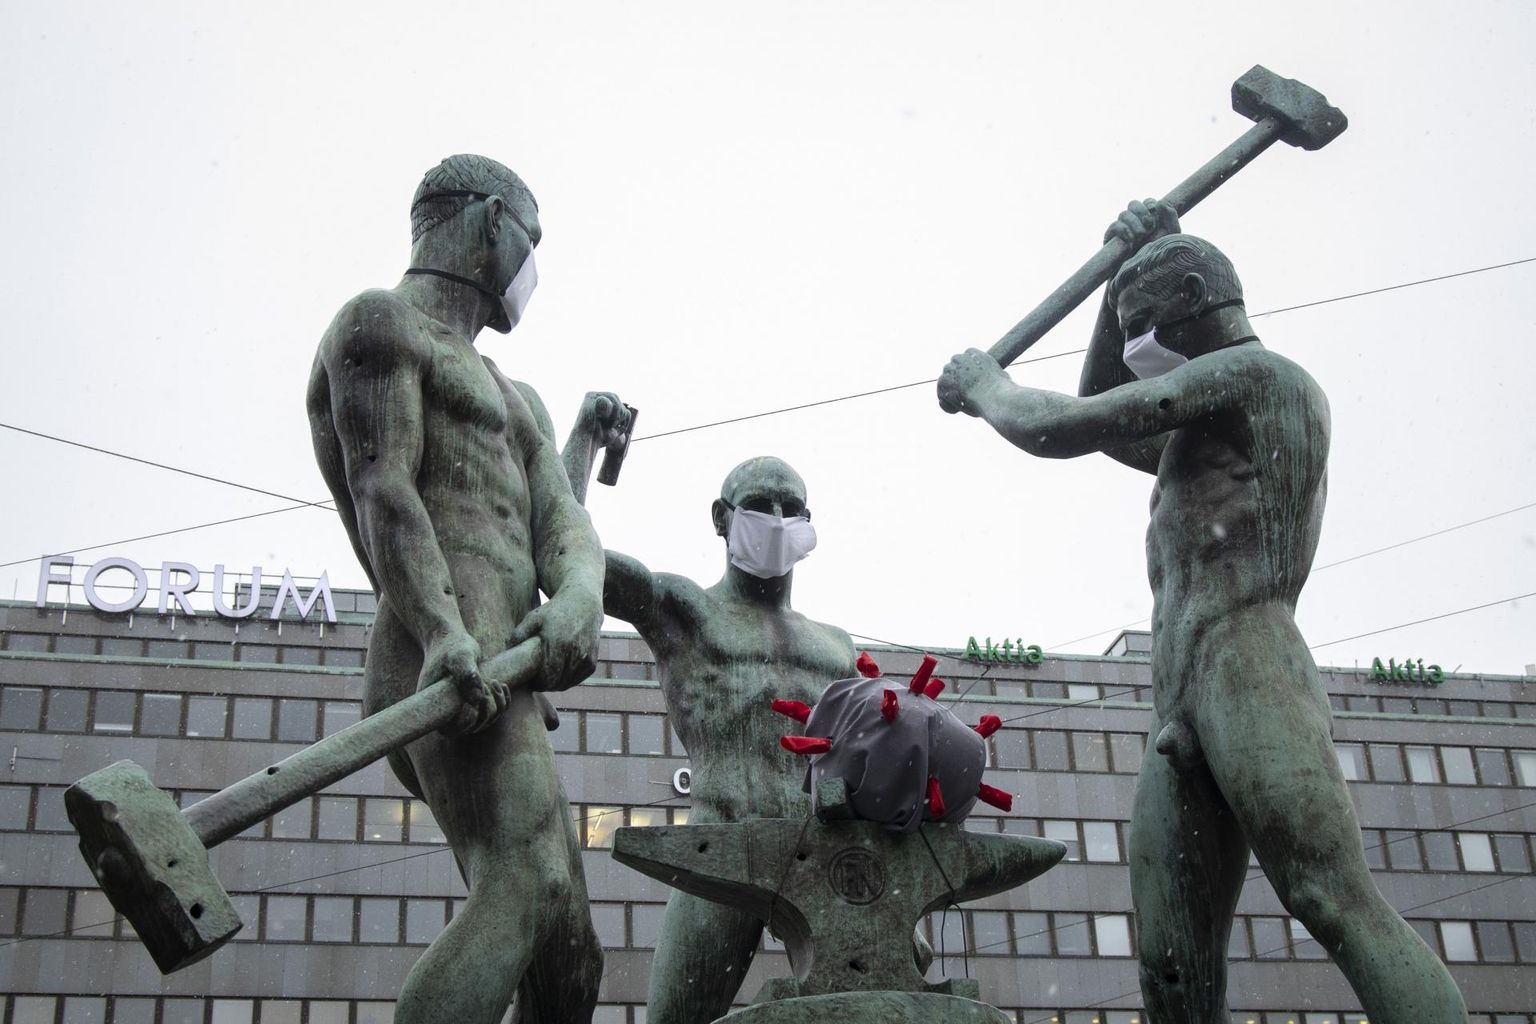 Helsingi kesklinnas asuv Felix Nylundi kuju «Kolm seppa» on saanud koroonaviiruse pandeemia ajal ette maskid ning alasile on asetatud viirus ise. Läinud nädalal riiki toimetatud kaitsemaskid sobivad nii hooldeasutustesse kui ka skulptuuri kaunistamiseks, aga mitte haiglatesse. 